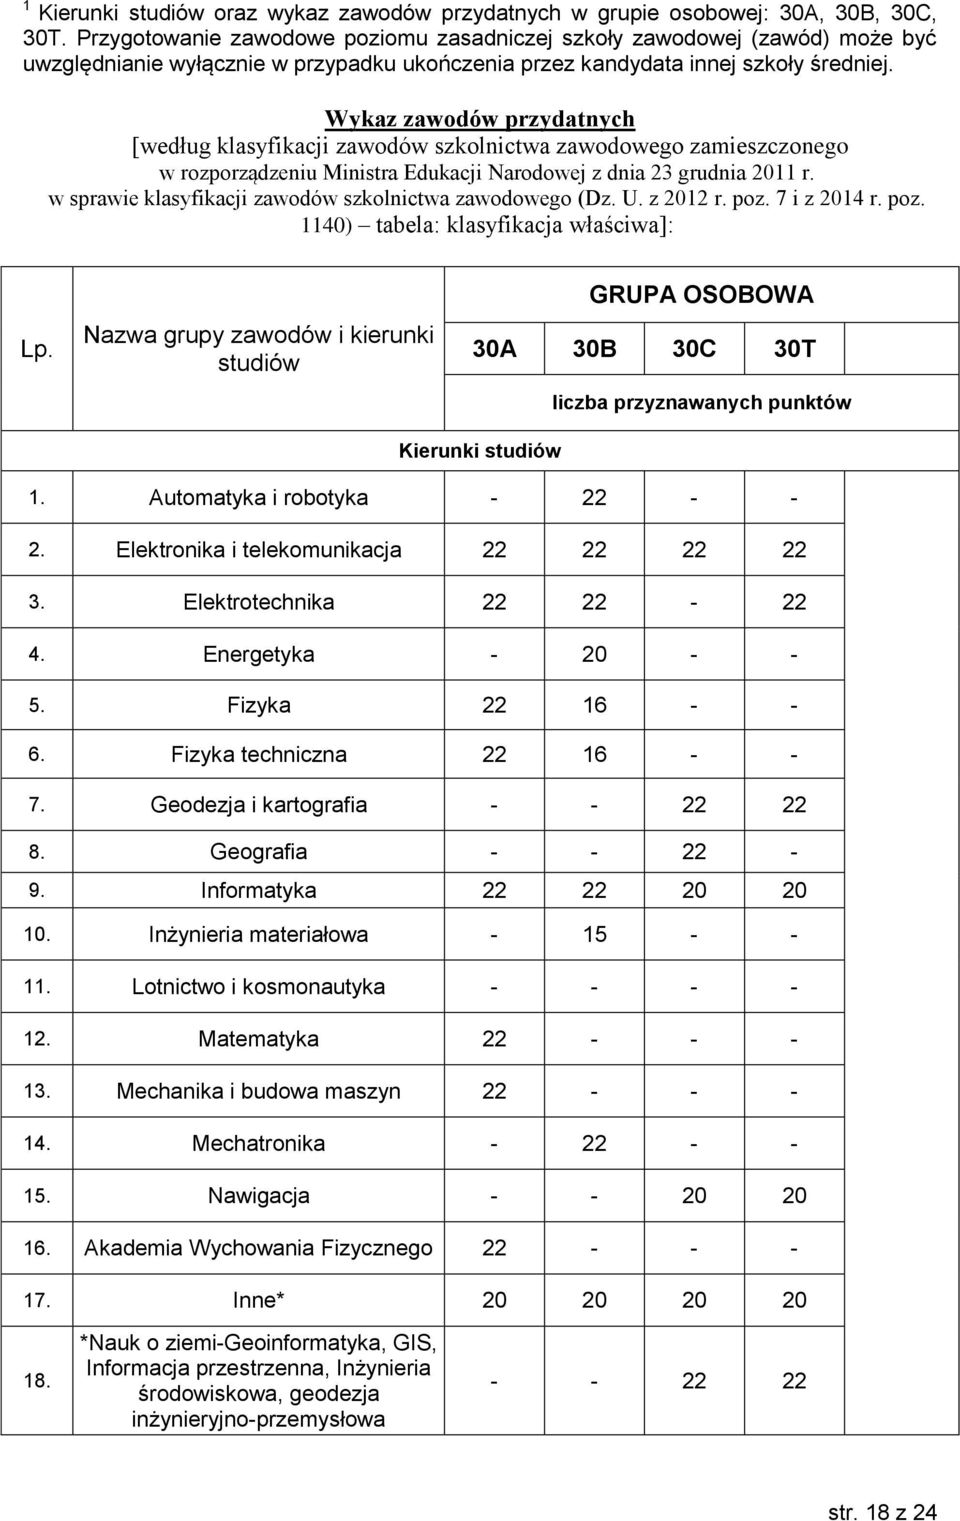 Wykaz zawodów przydatnych [według klasyfikacji zawodów szkolnictwa zawodowego zamieszczonego w rozporządzeniu Ministra Edukacji Narodowej z dnia 23 grudnia 2011 r.